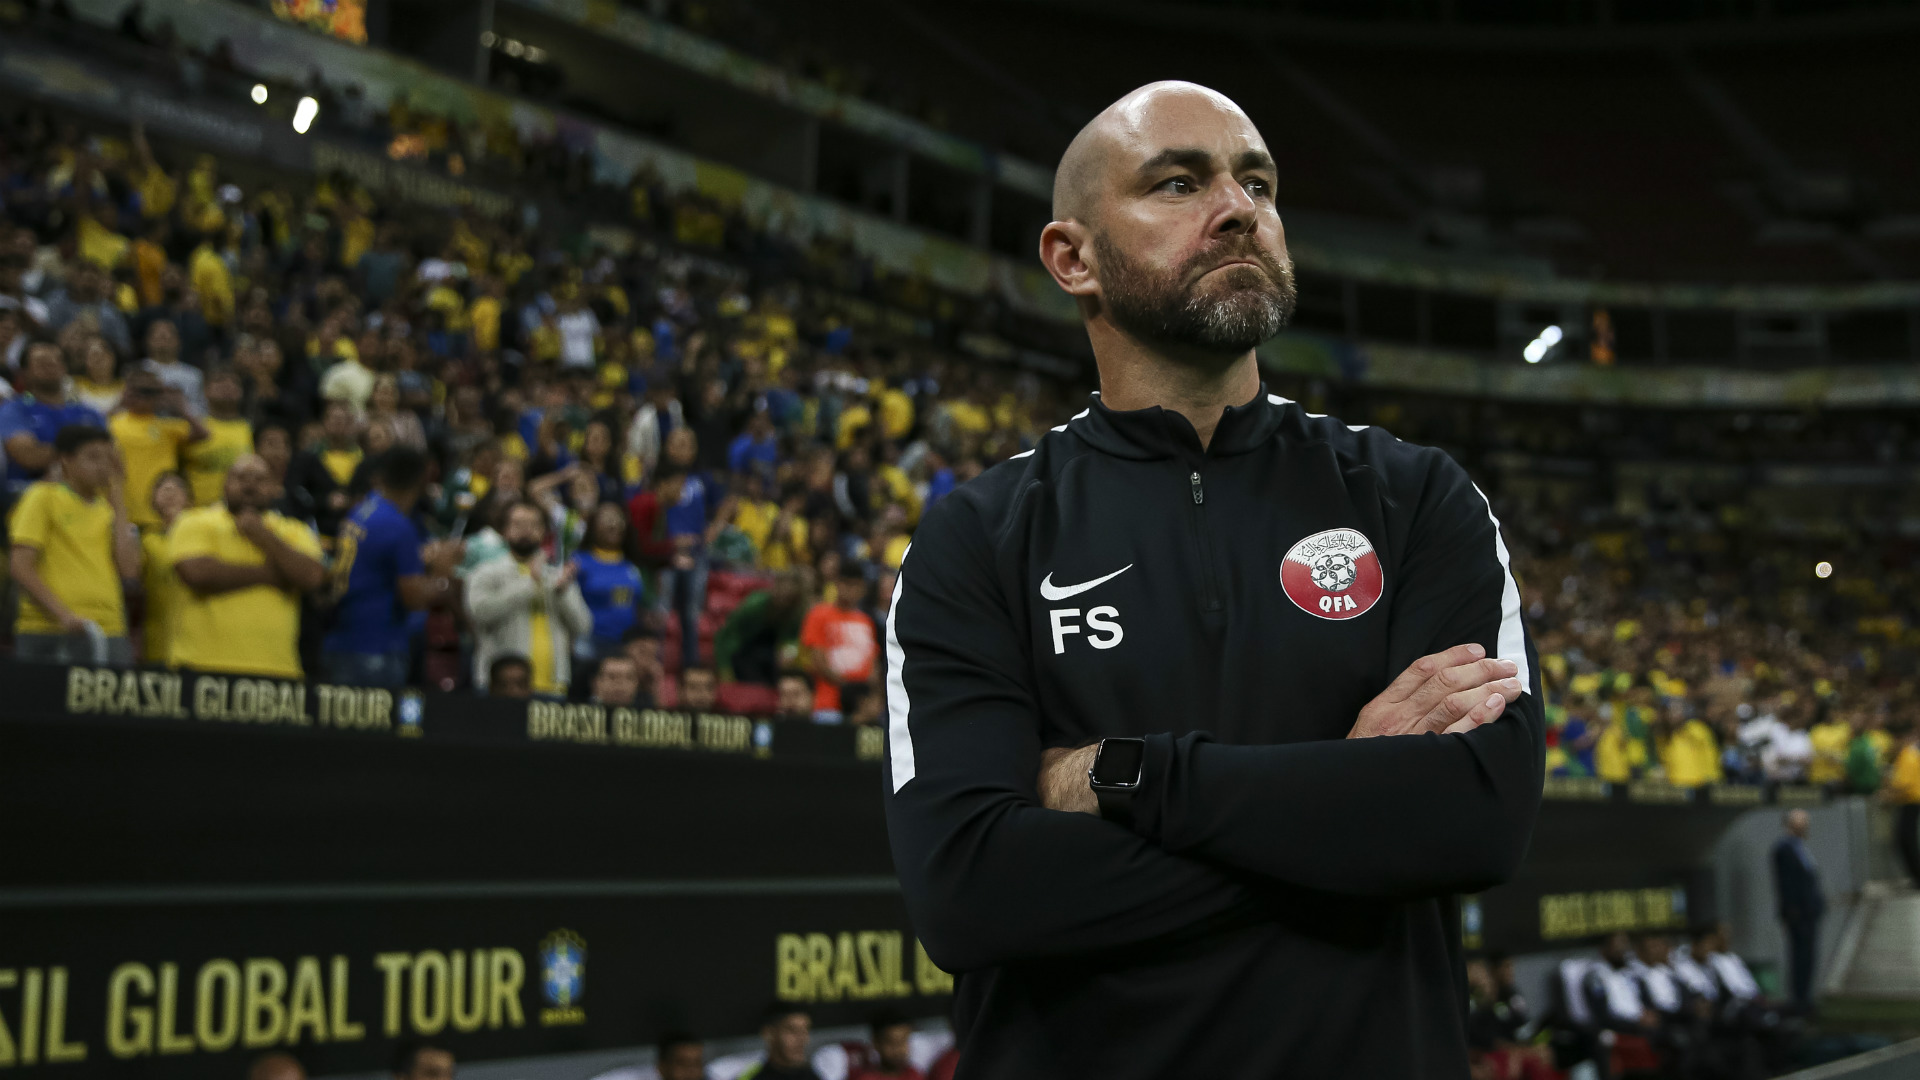 Тренер из «Барсы», сюрприз на Кубке КОНКАКАФ. Как сборная Катара подошла к ЧМ